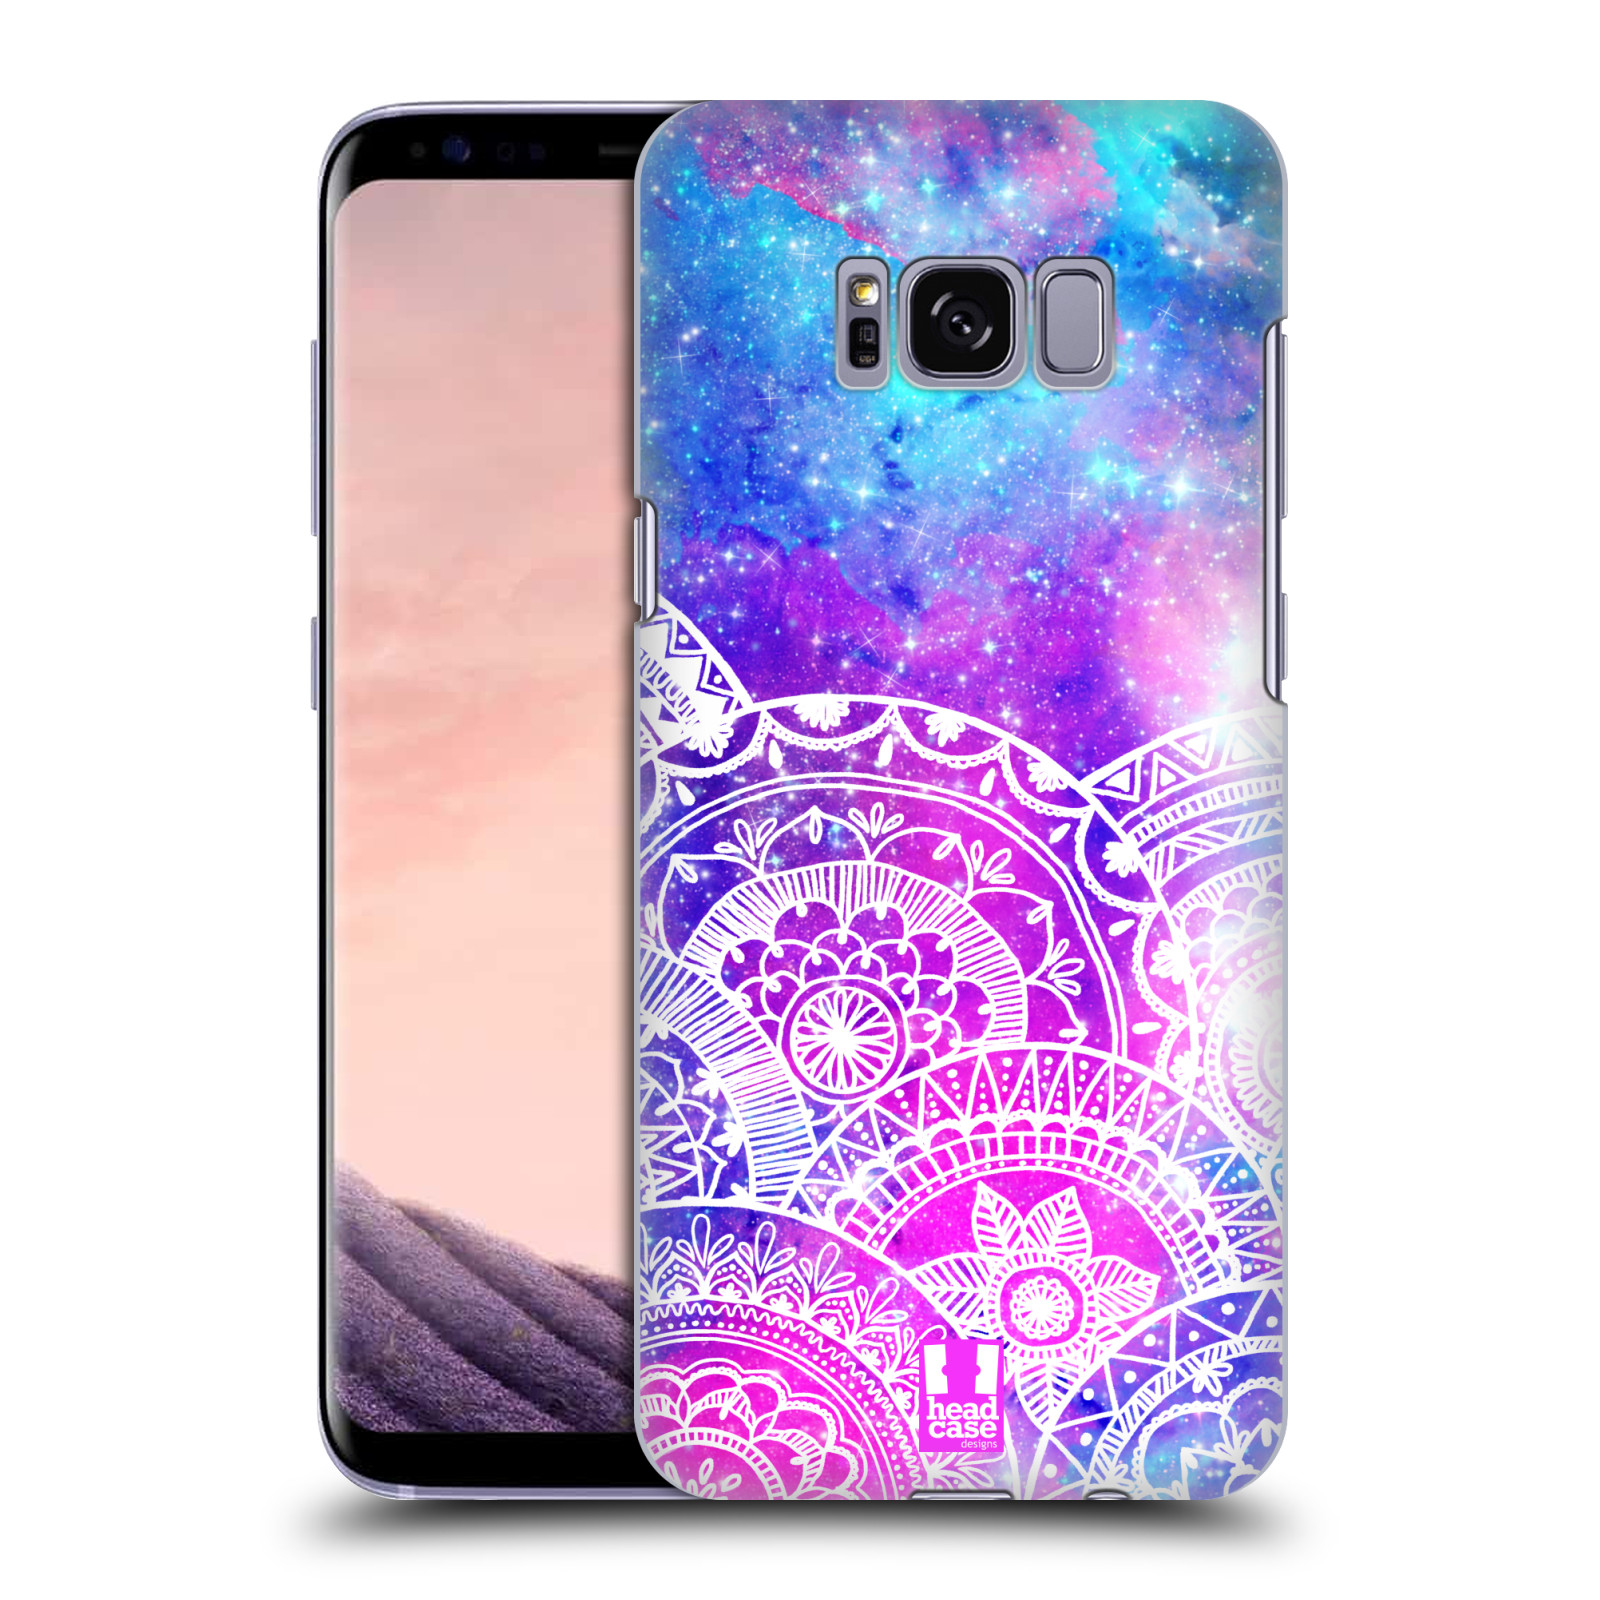 Pouzdro na mobil Samsung Galaxy S8 - HEAD CASE - Mandala nekonečná galaxie